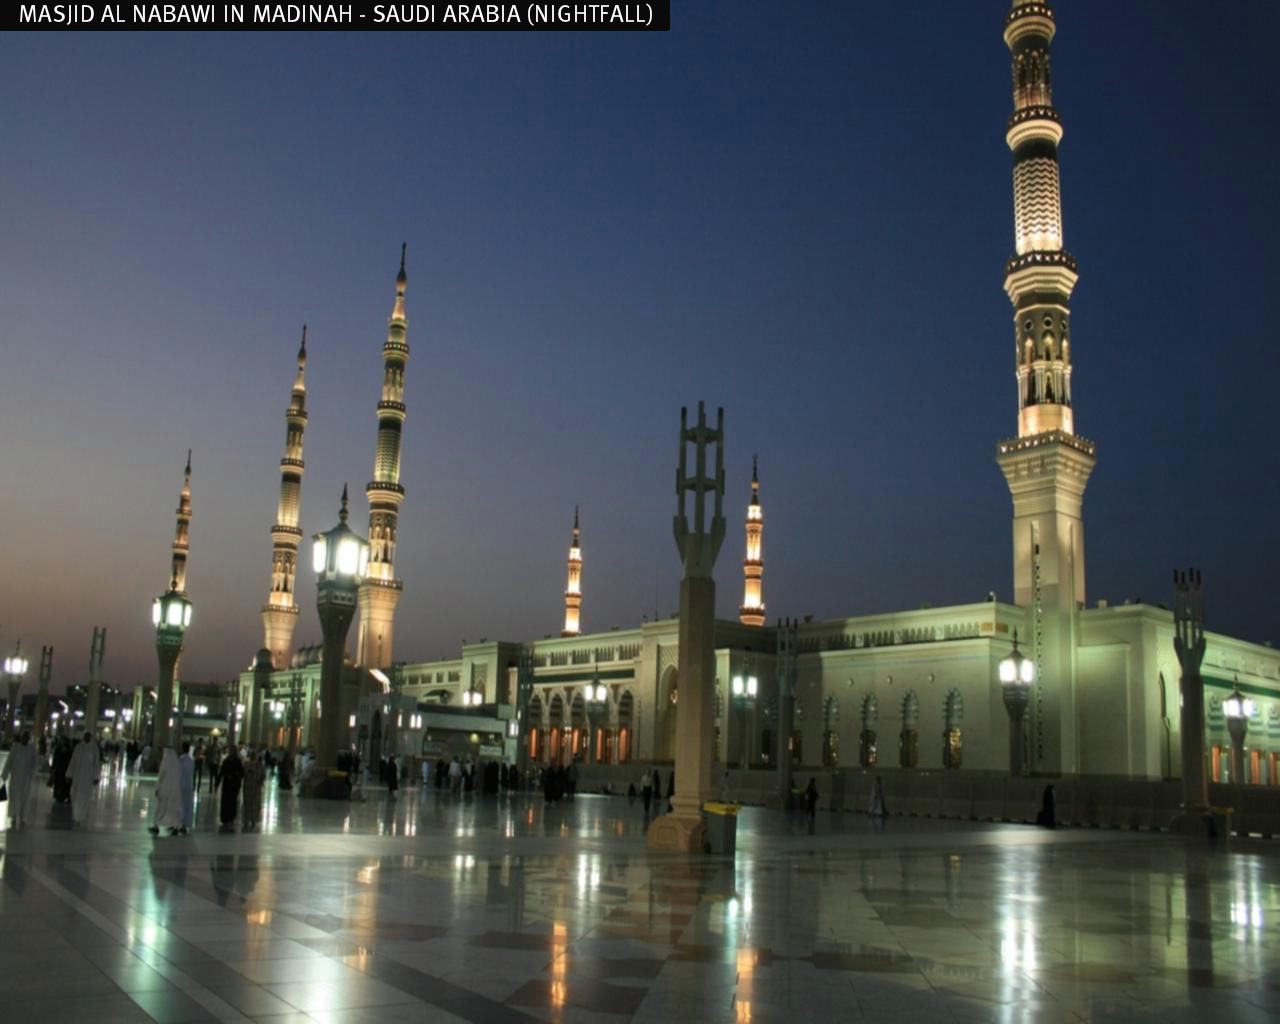 fond d'écran masjid nabawi,ville,mosquée,bâtiment,lieu de culte,nuit